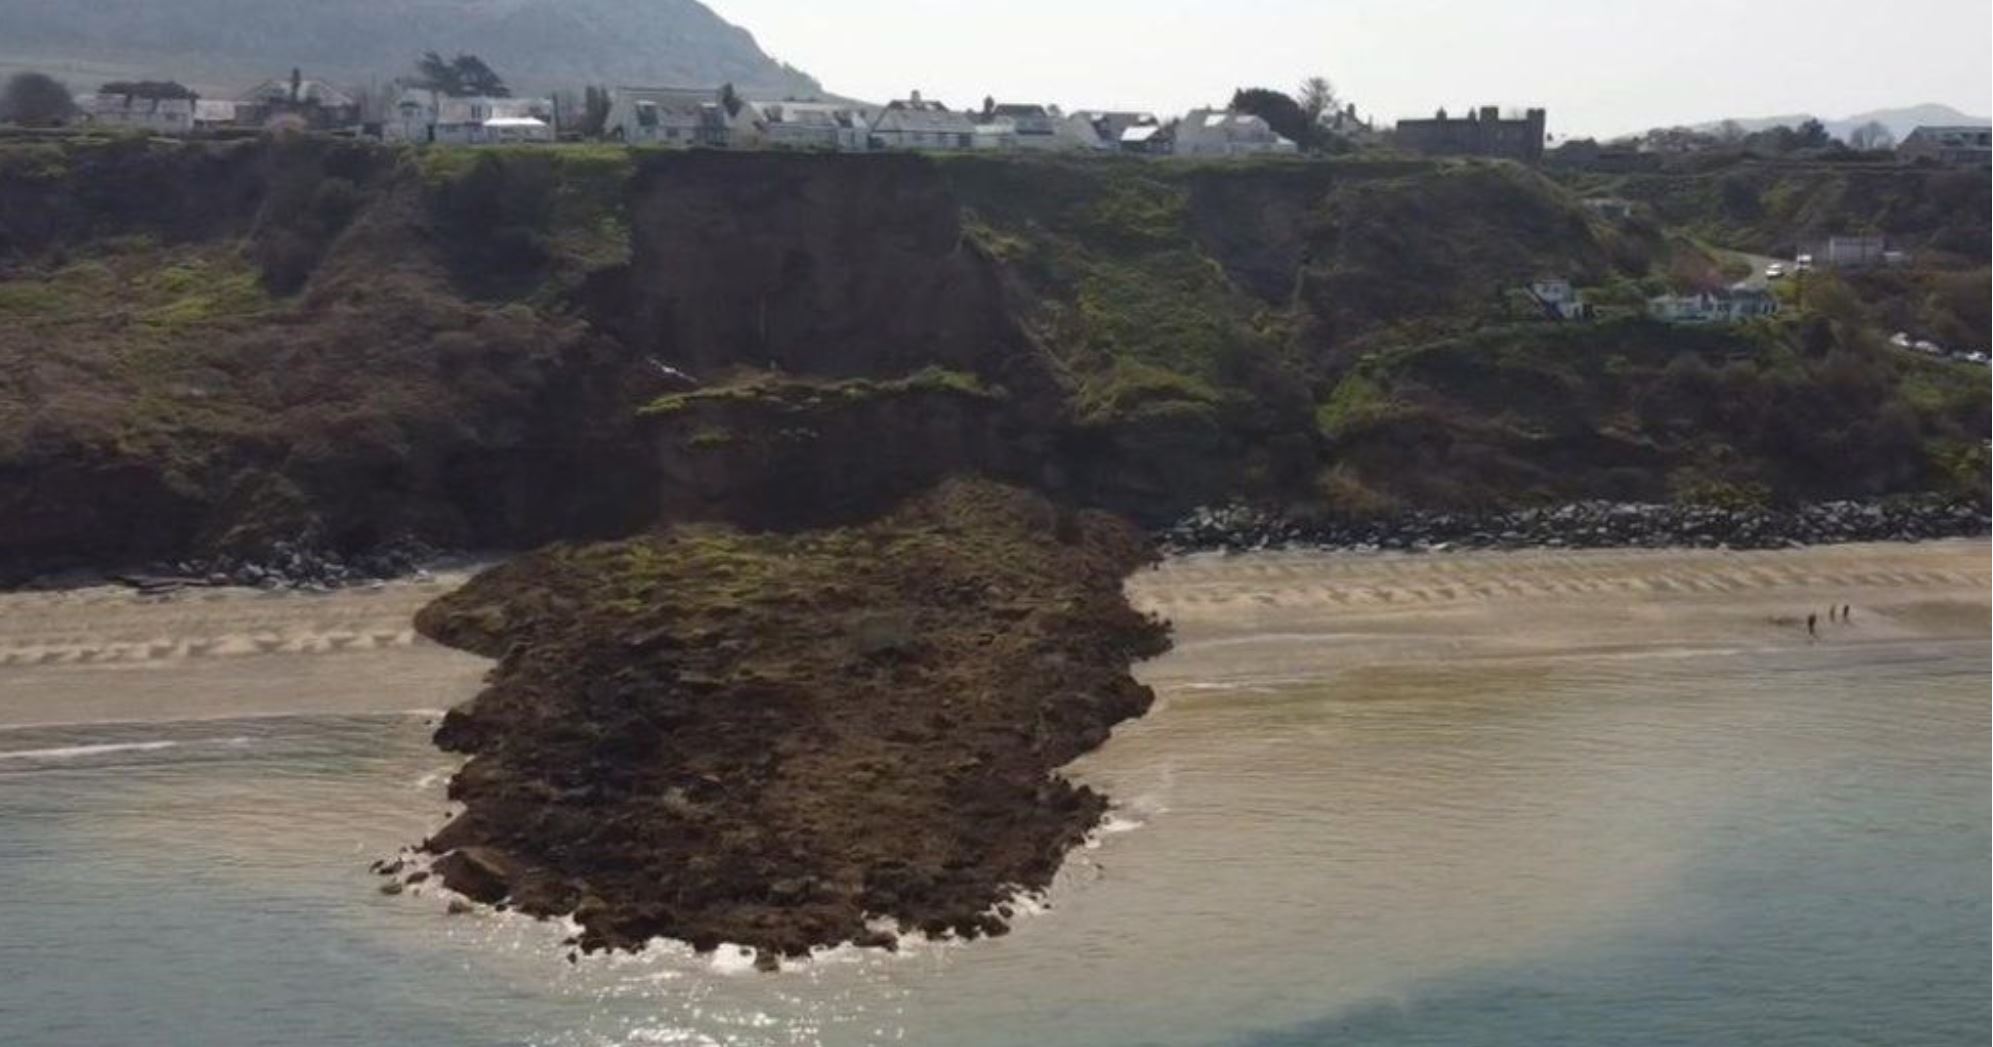 The 19 April 2021 coastal landslide at Nefyn Bay in North Wales.